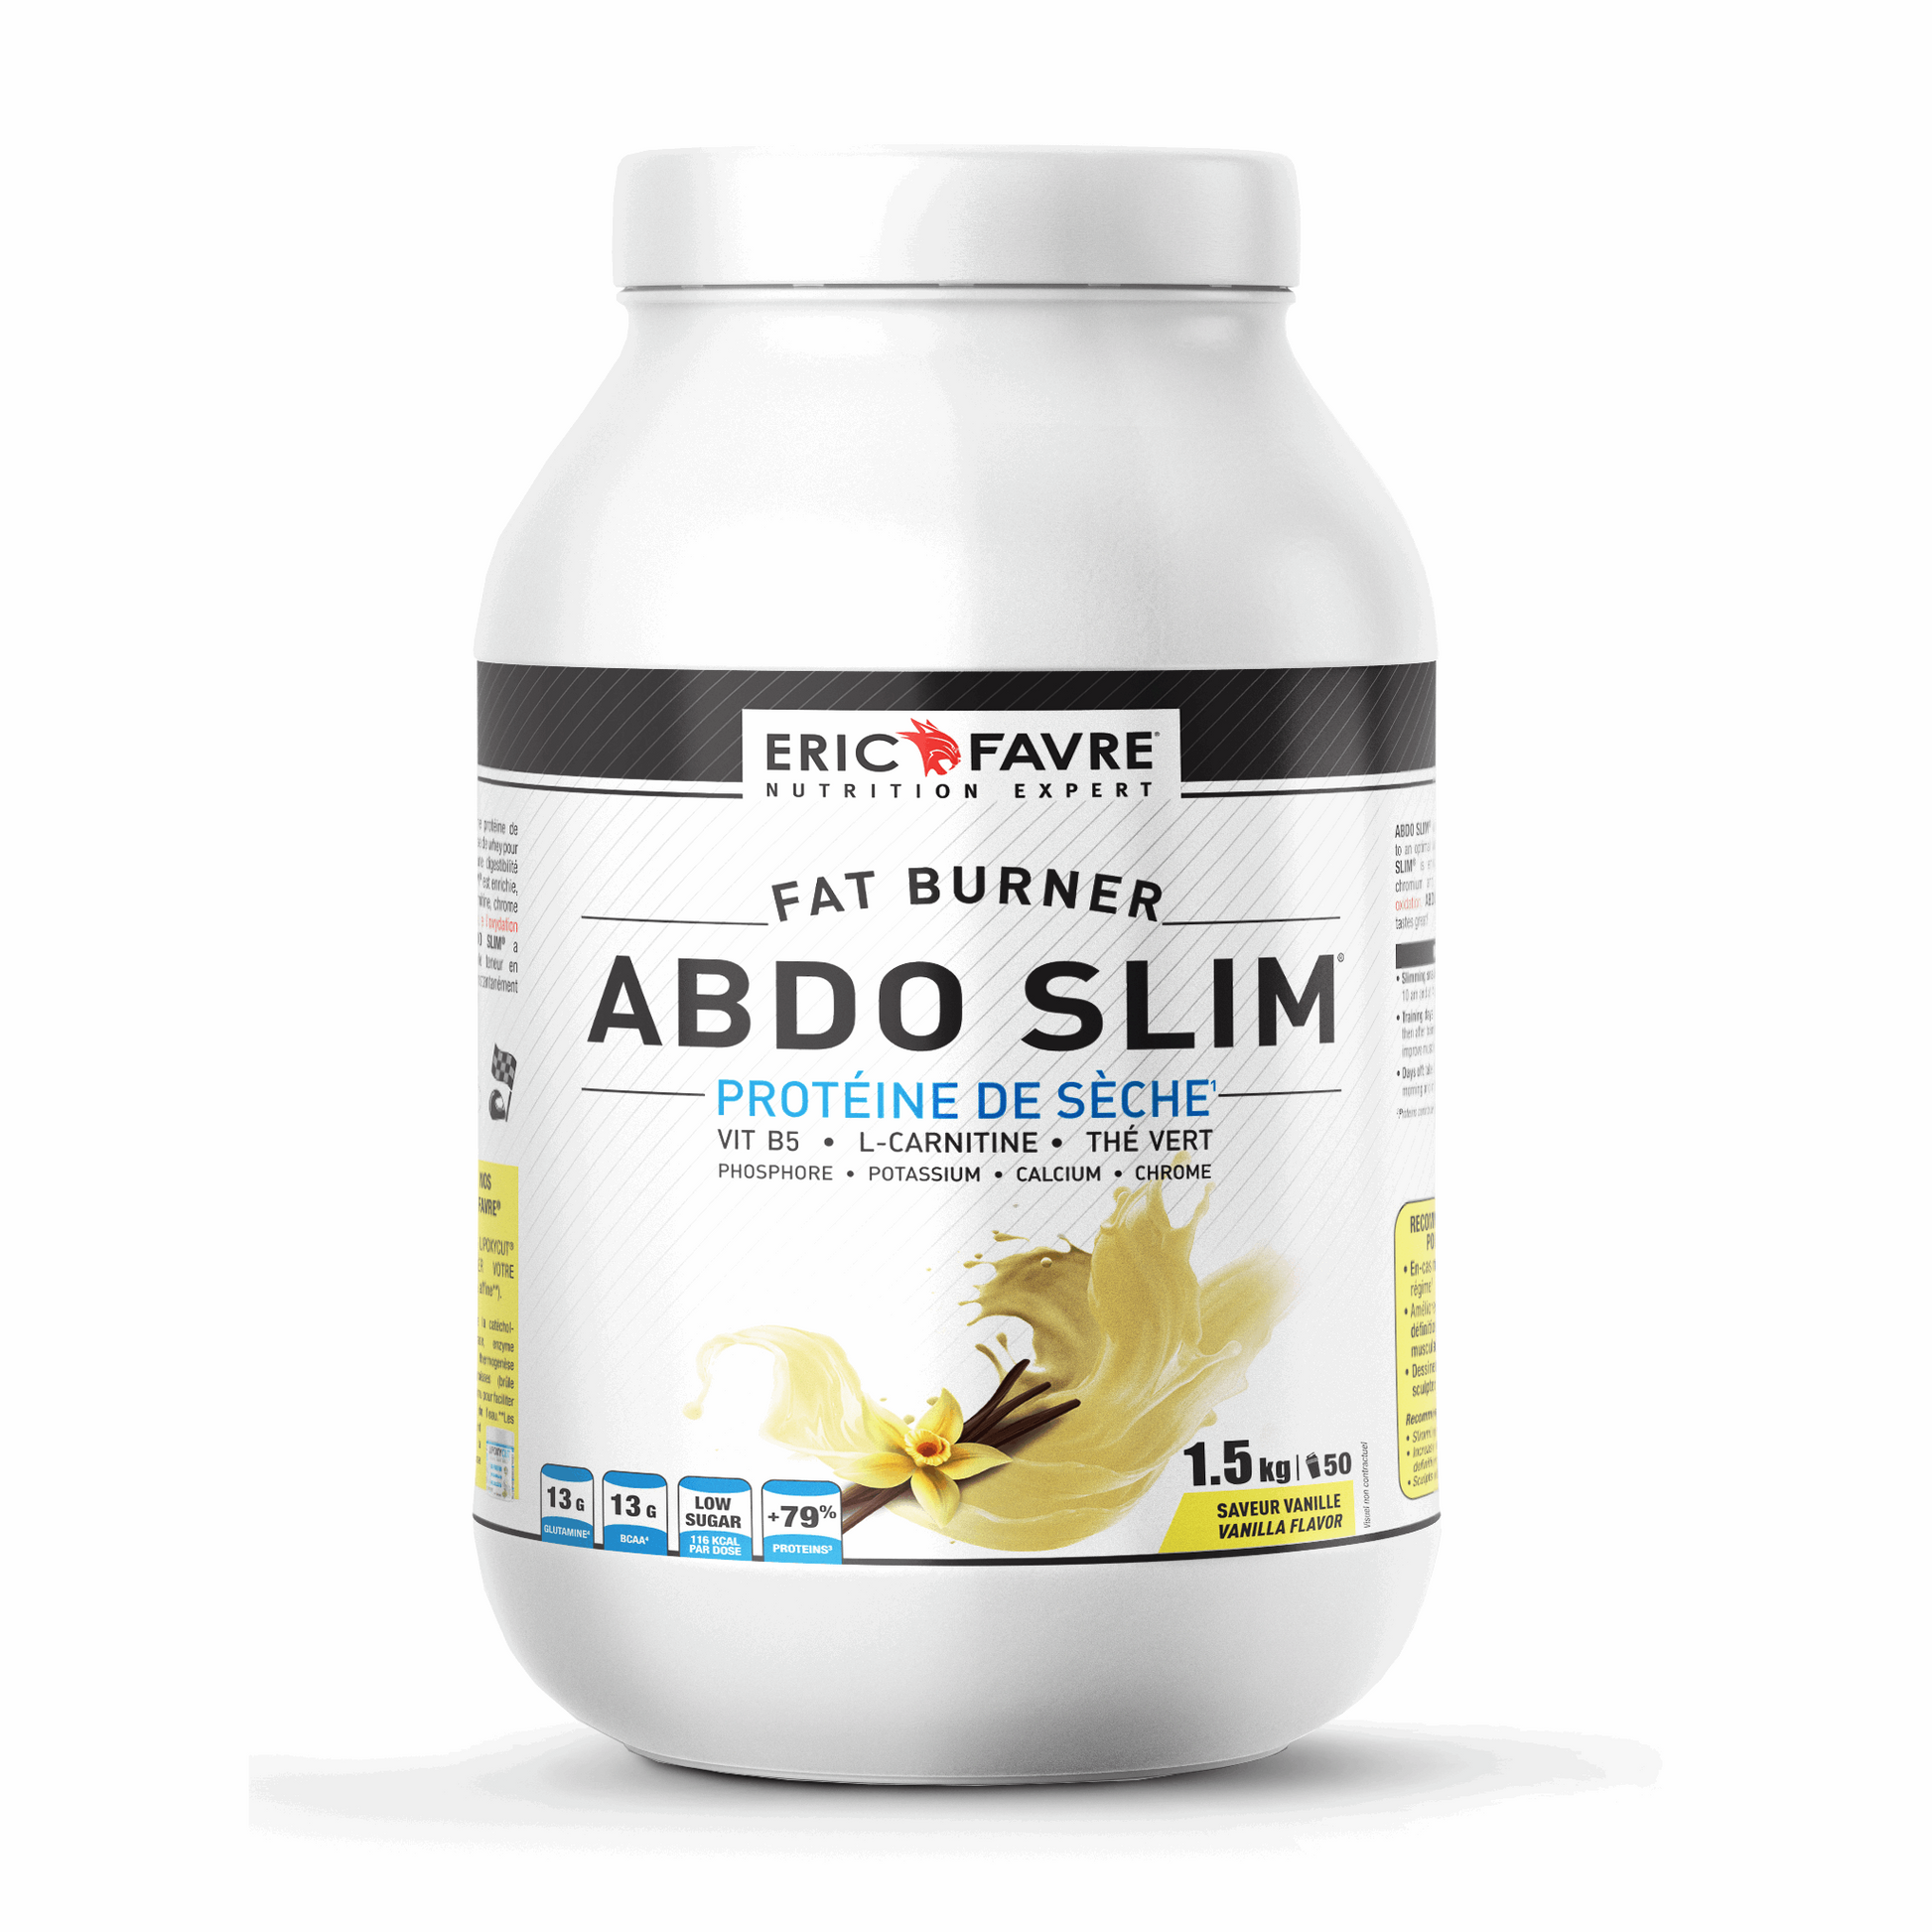 Abdo slim Burner - Protéine de sèche 1.5kg / Vanille - ERIC FAVRE - Market Fit